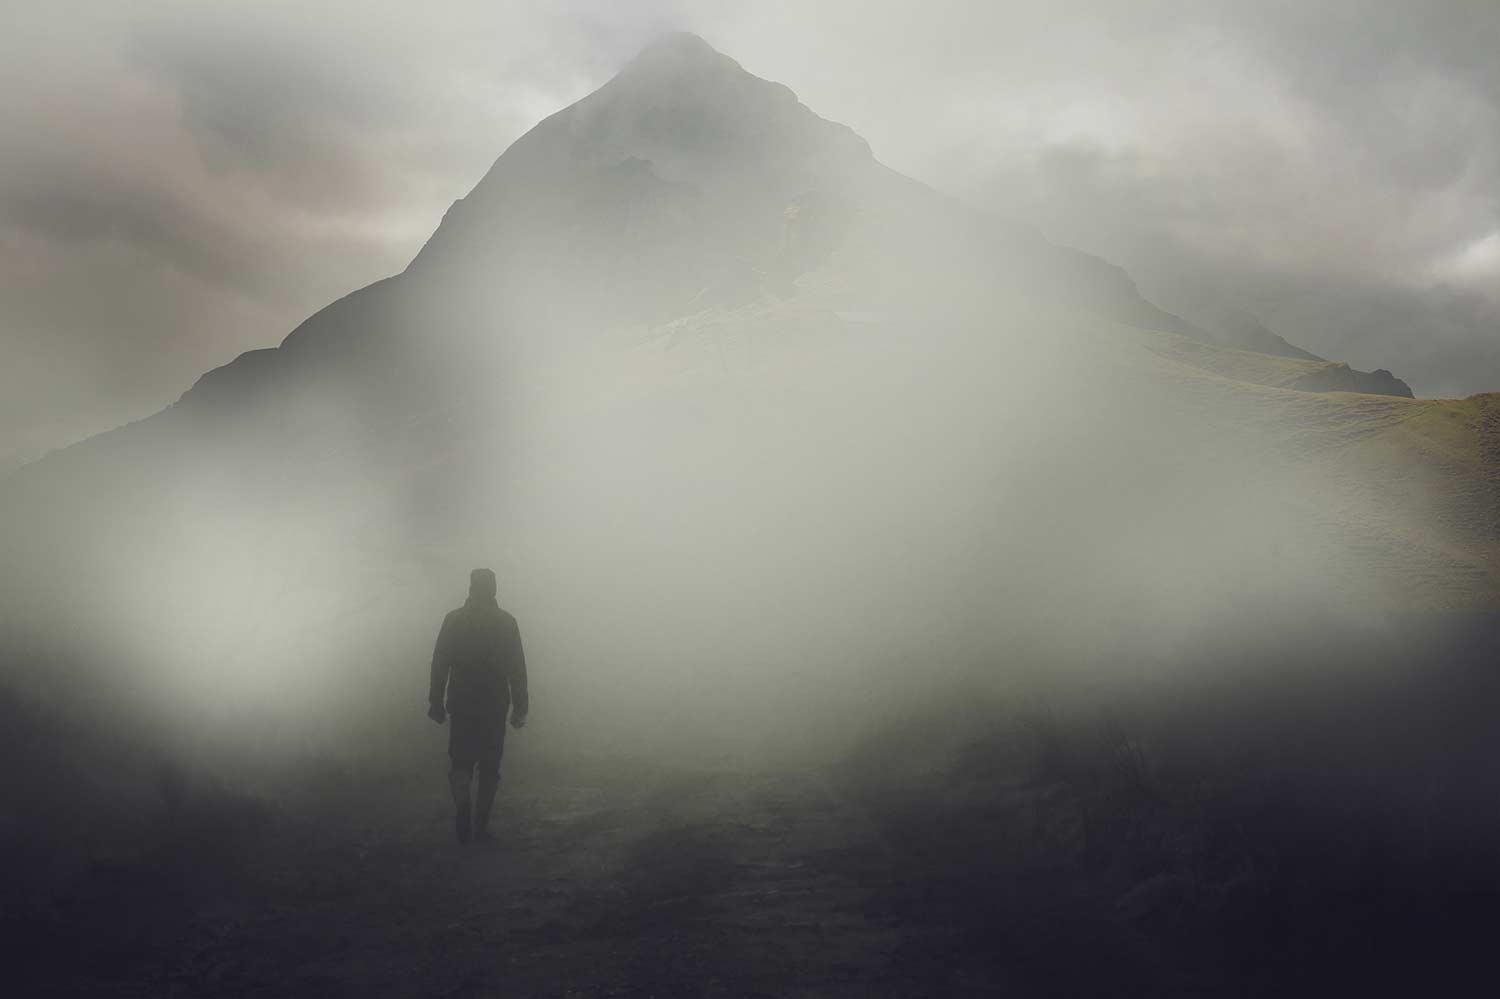 Hiker in a dense fog near a mountain.